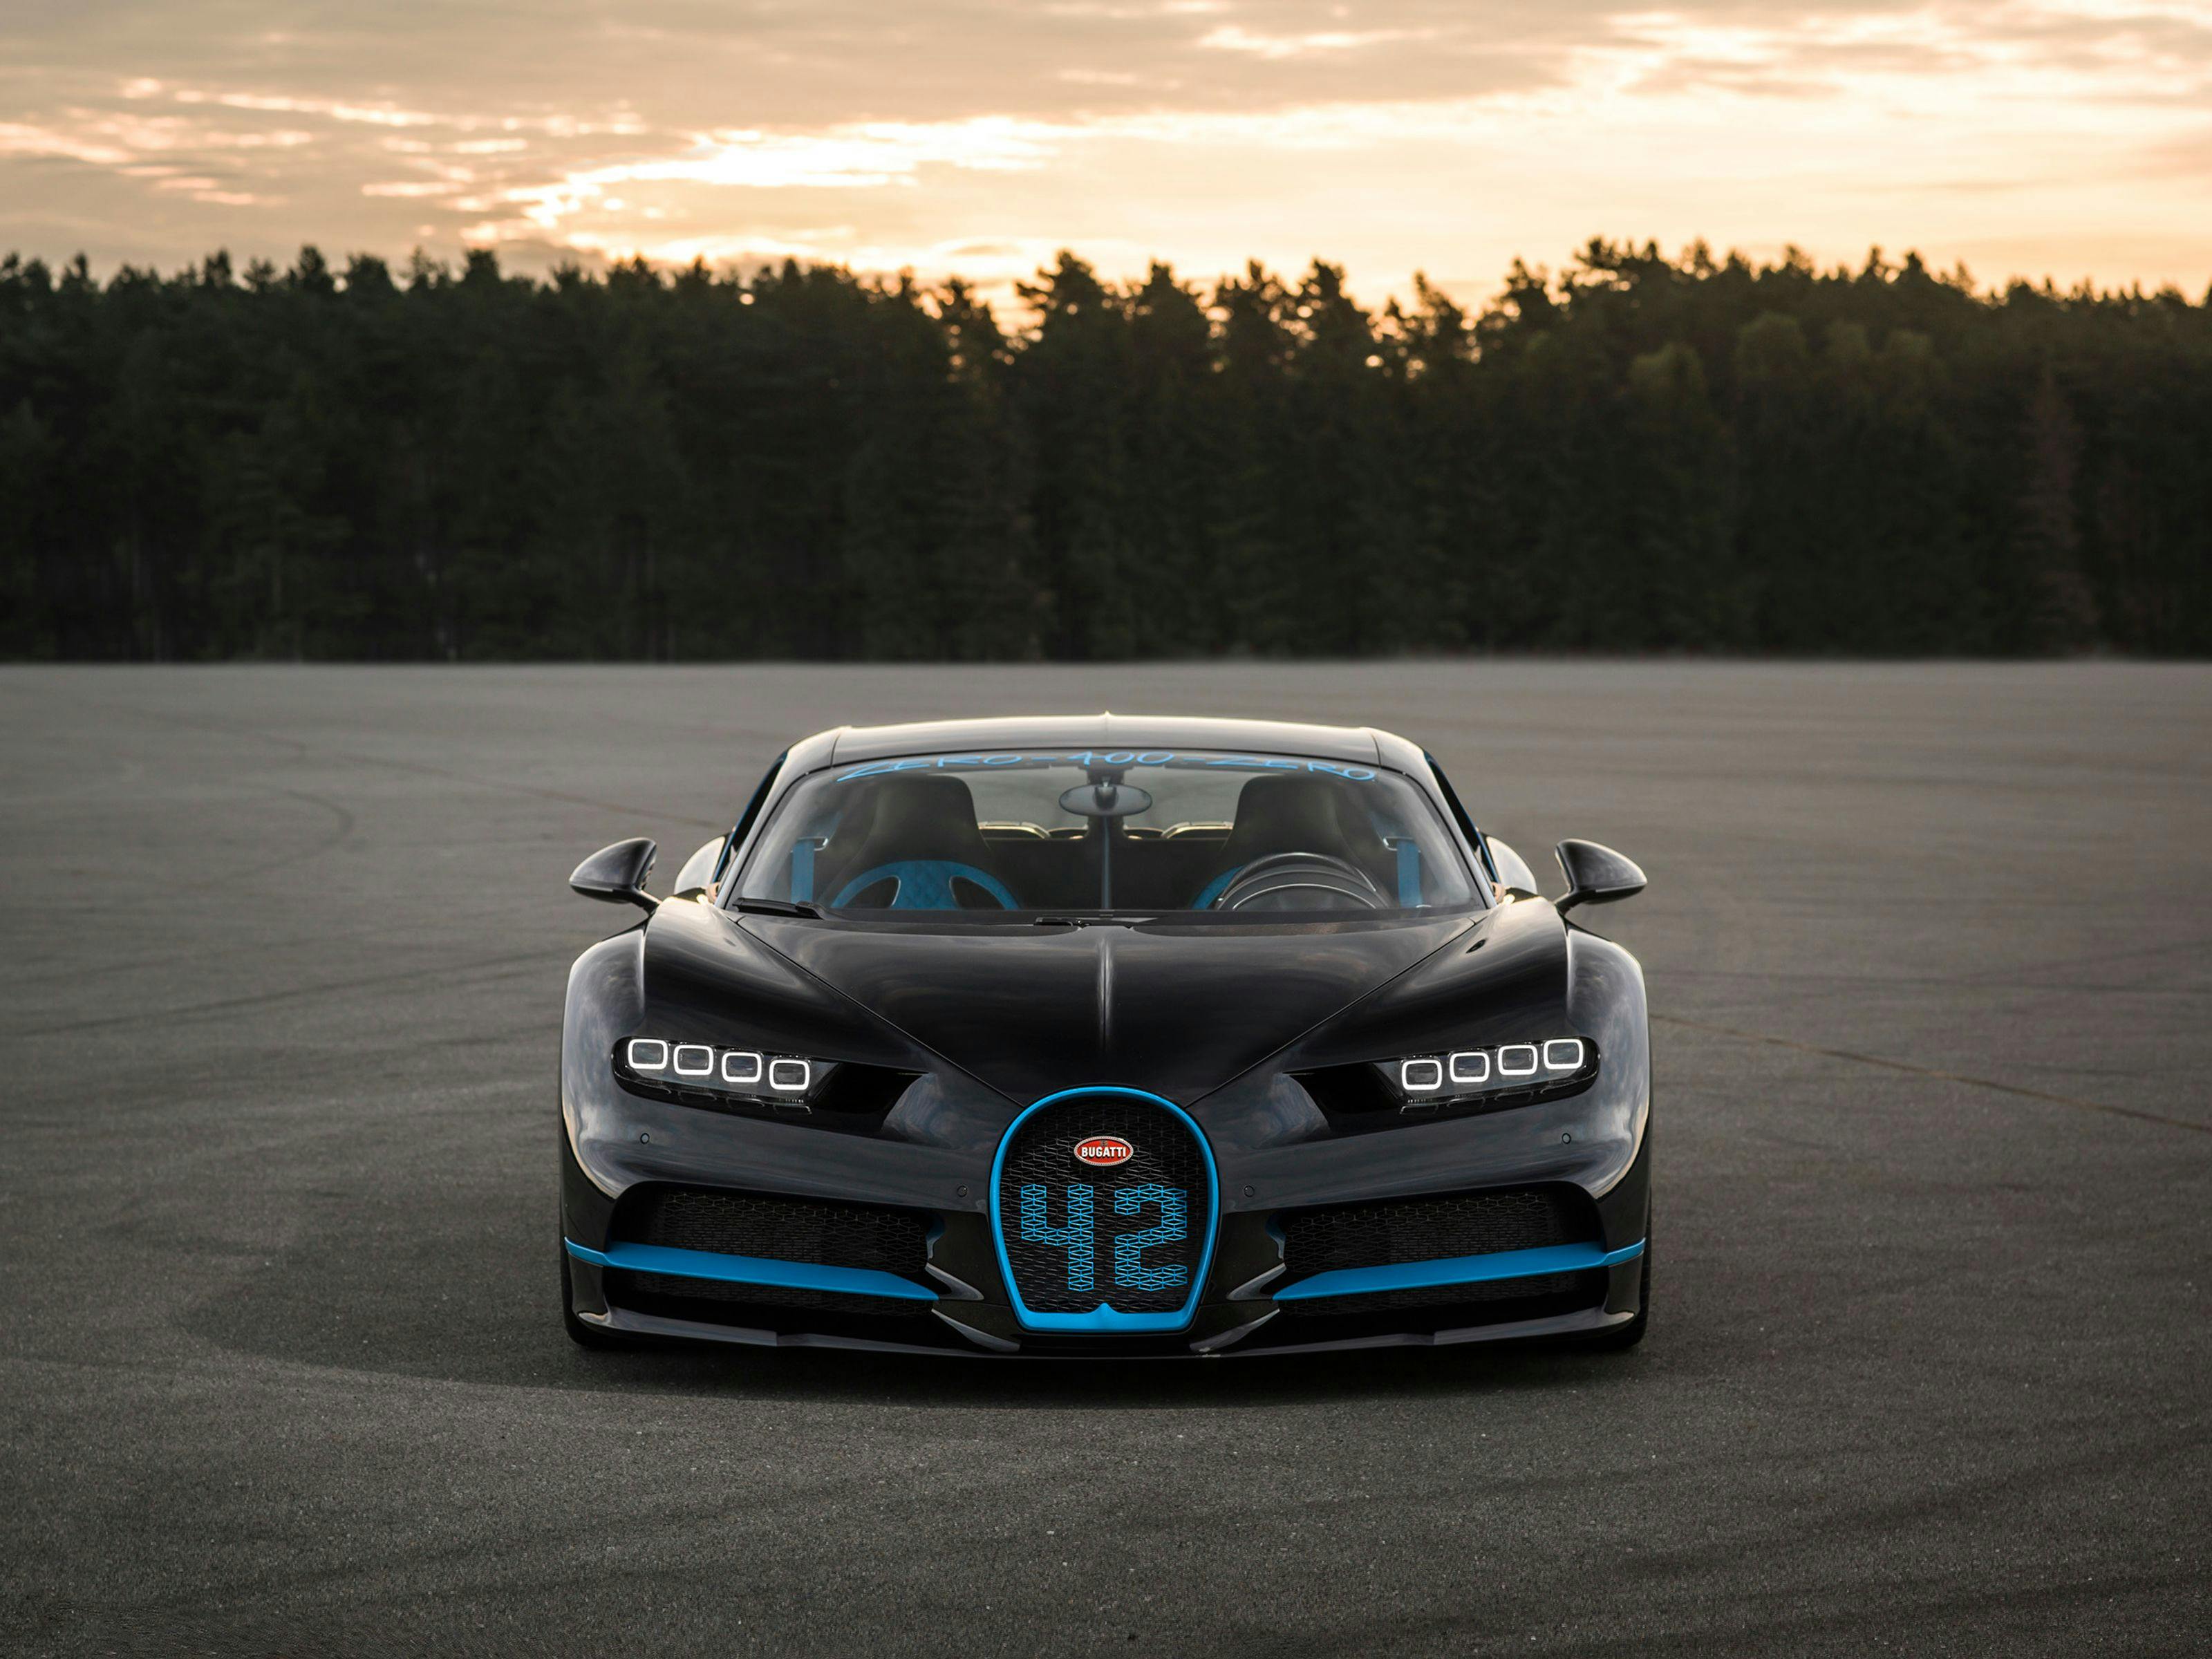 0-400-0 km/h in 42 Sekunden: Bugatti Chiron fährt Weltrekord